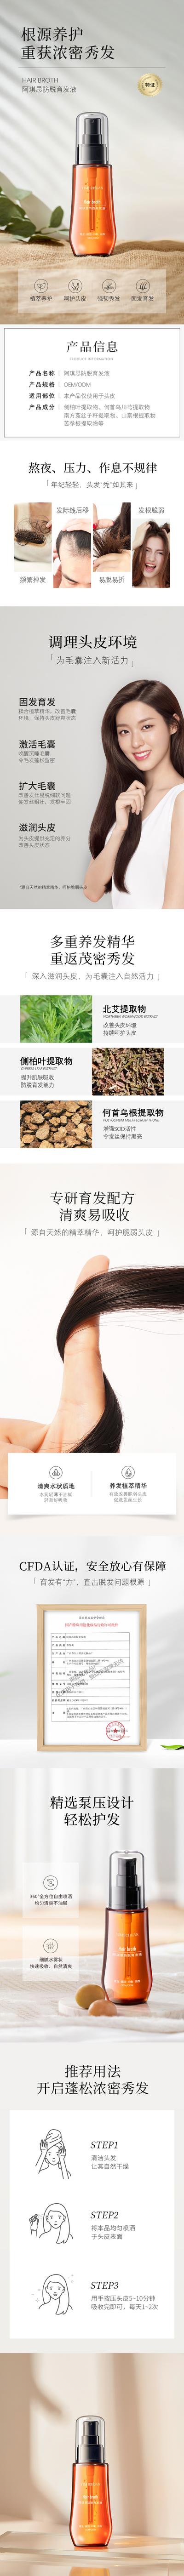 【南门网】广告 海报 电商 脱发 生发 头发 保养品 详情页